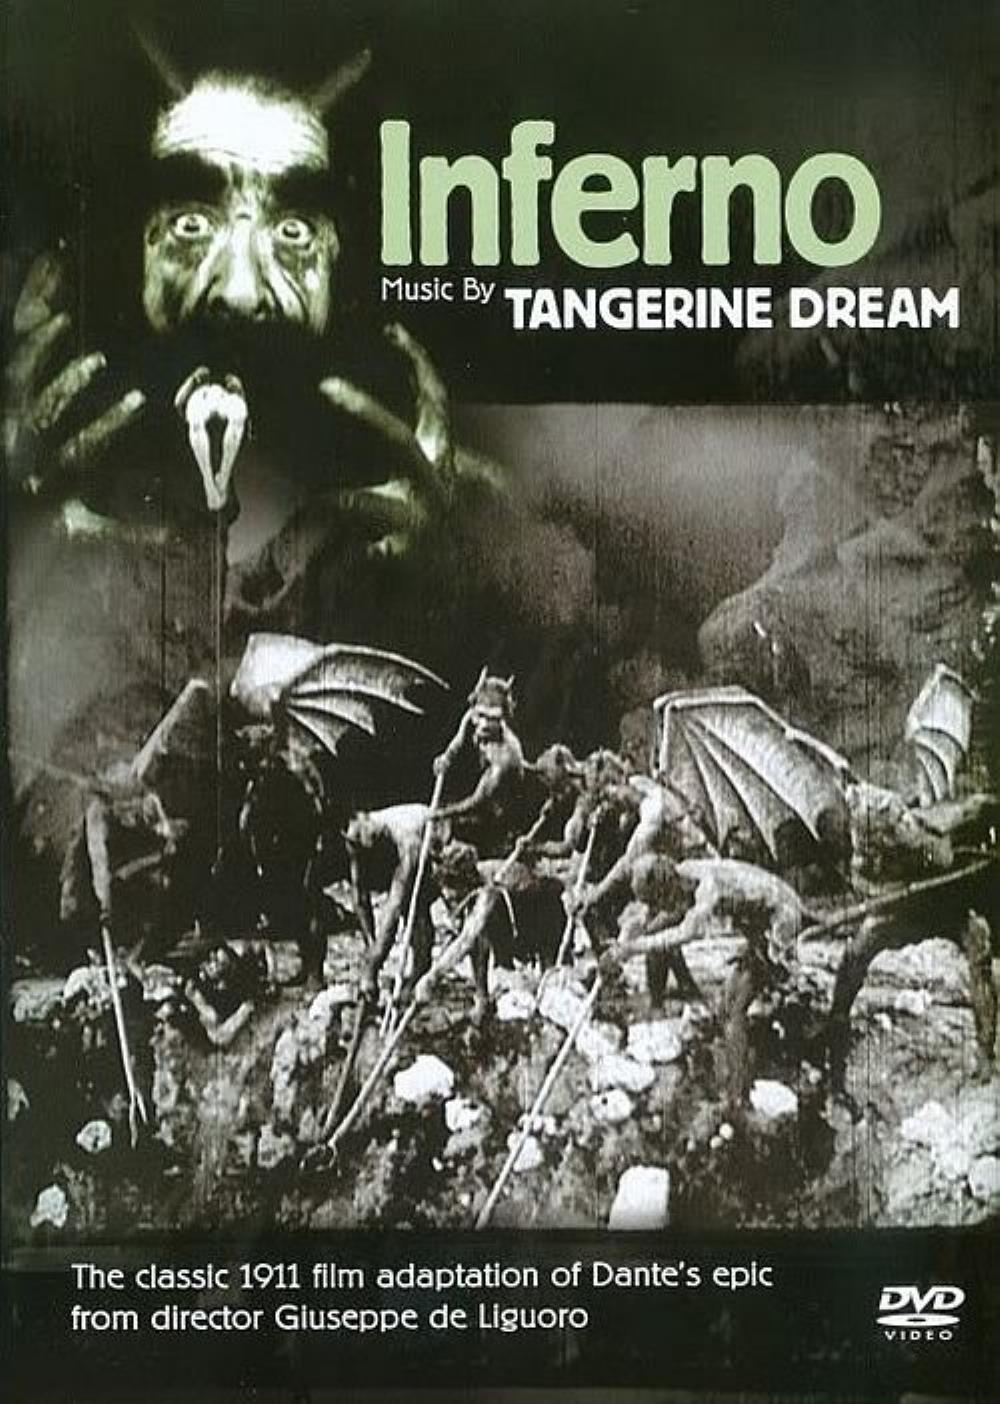 Tangerine Dream Inferno album cover